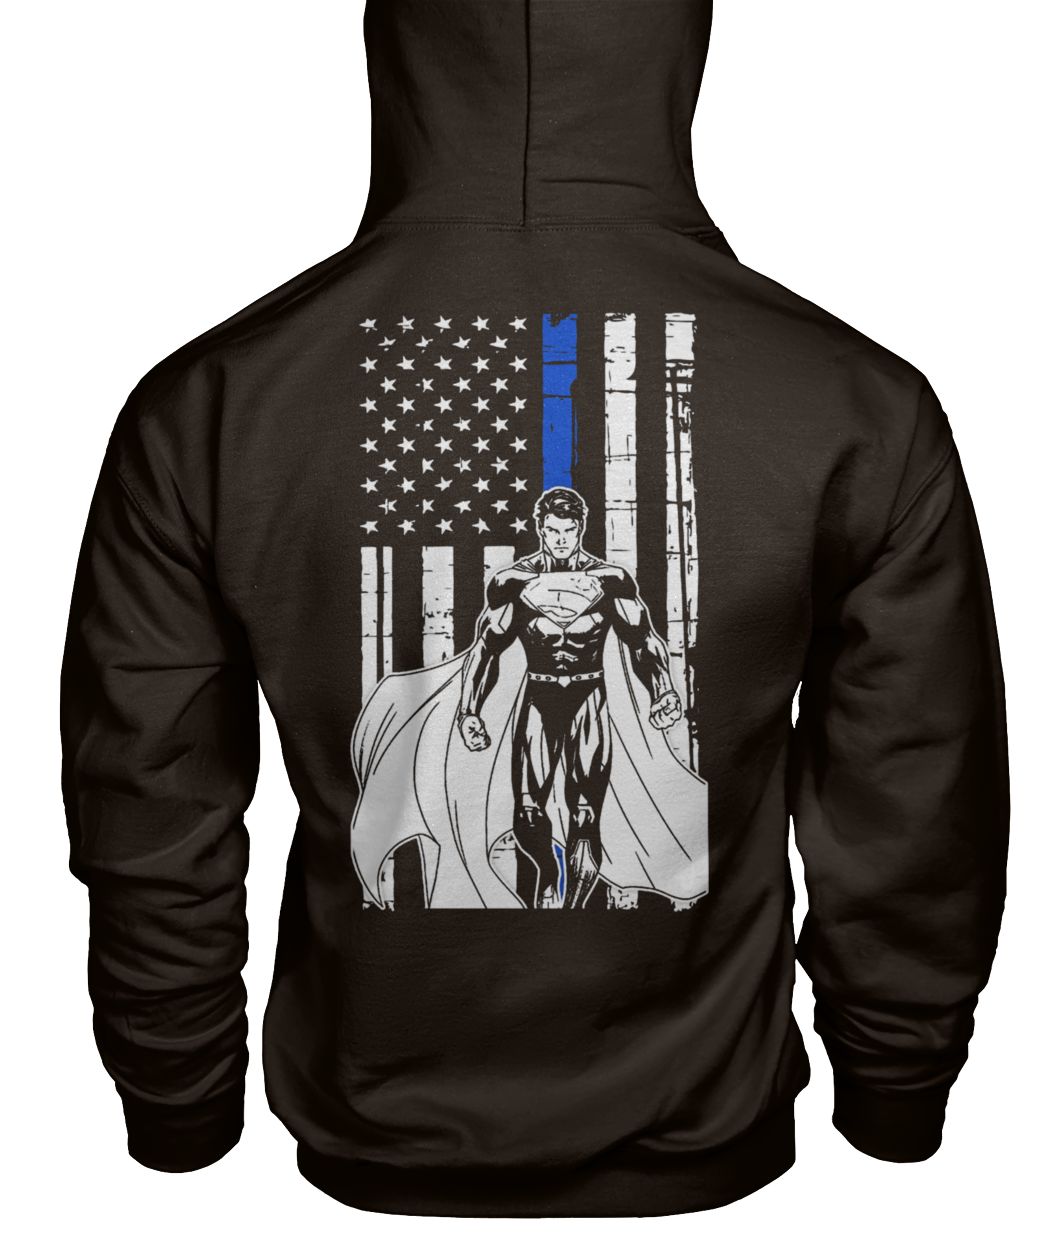 Superman american flag gildan hoodie